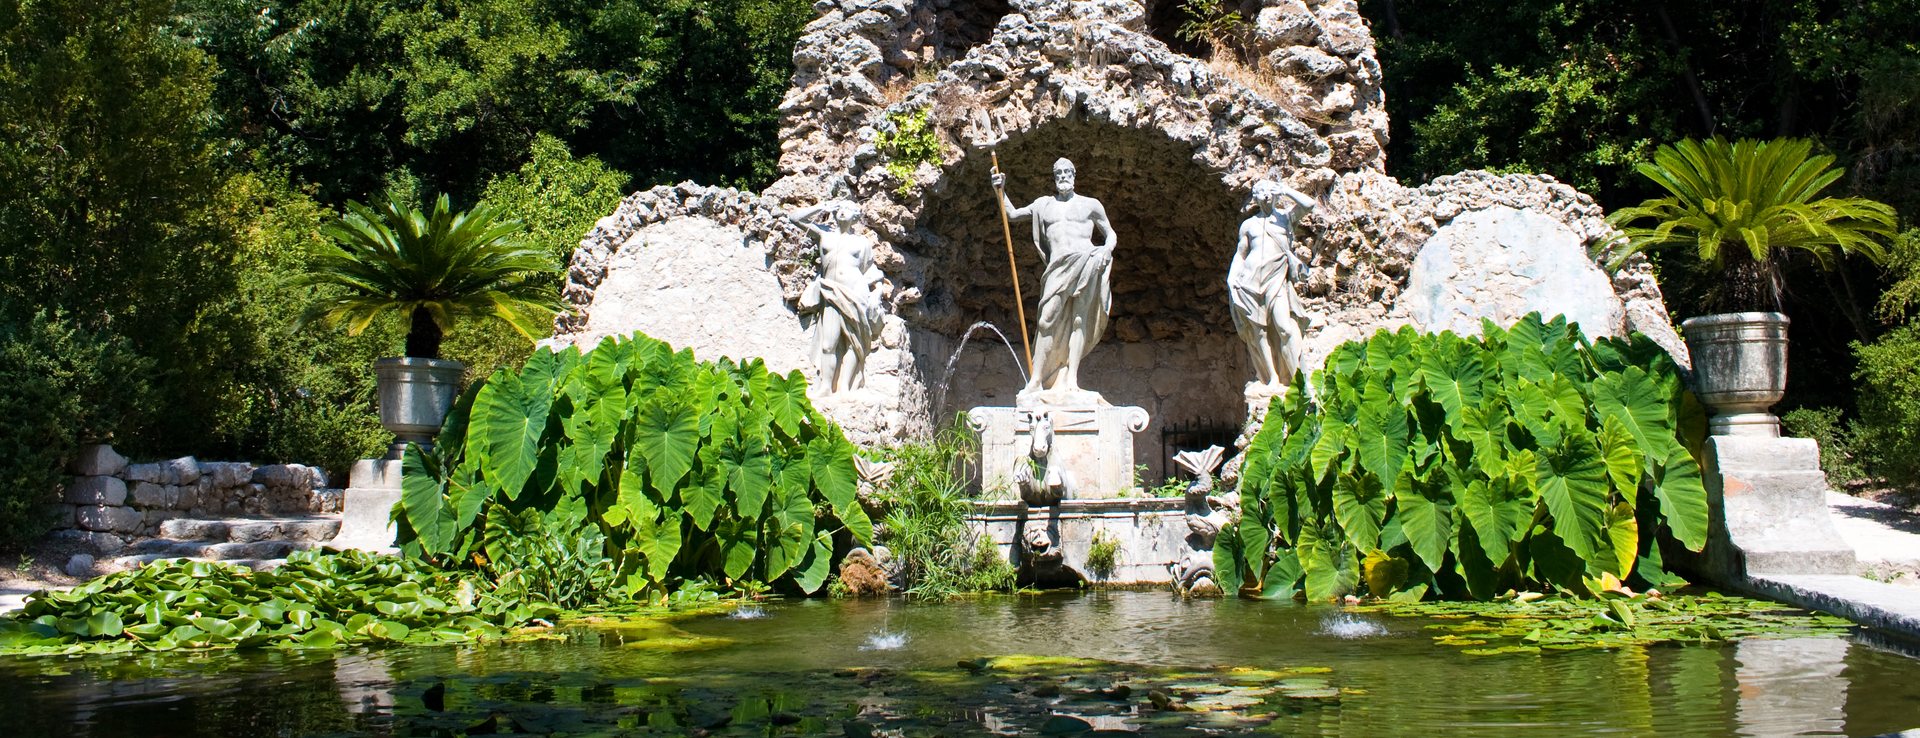 Arboretum Trsteno Image 1